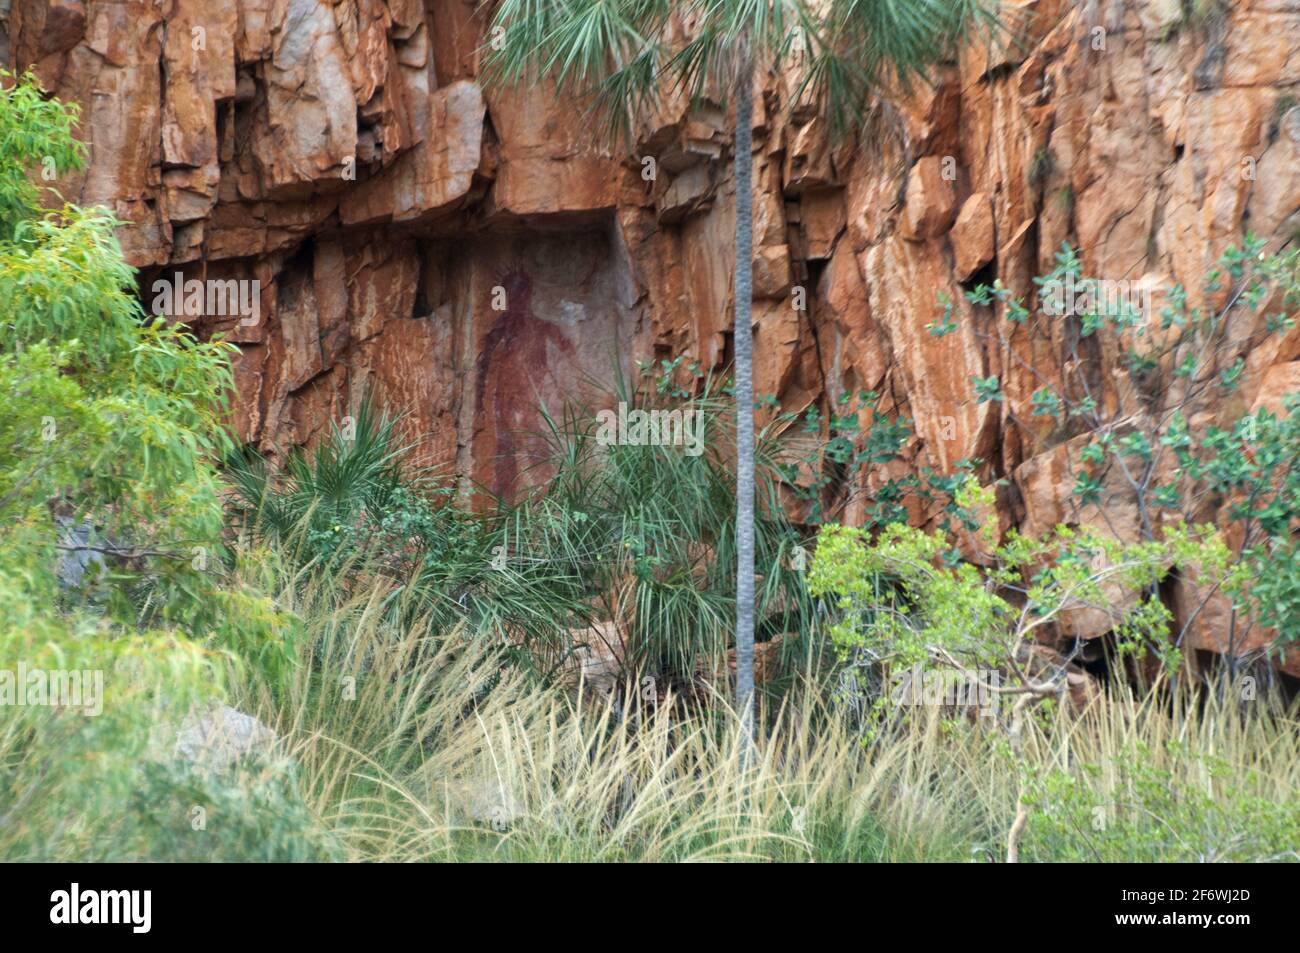 Rock face à Nitmiluk (Katherine) gorge, Katherine, territoire du Nord. L'art rupestre aborigène de Jawoyn est visible sous le porte-à-faux. Banque D'Images